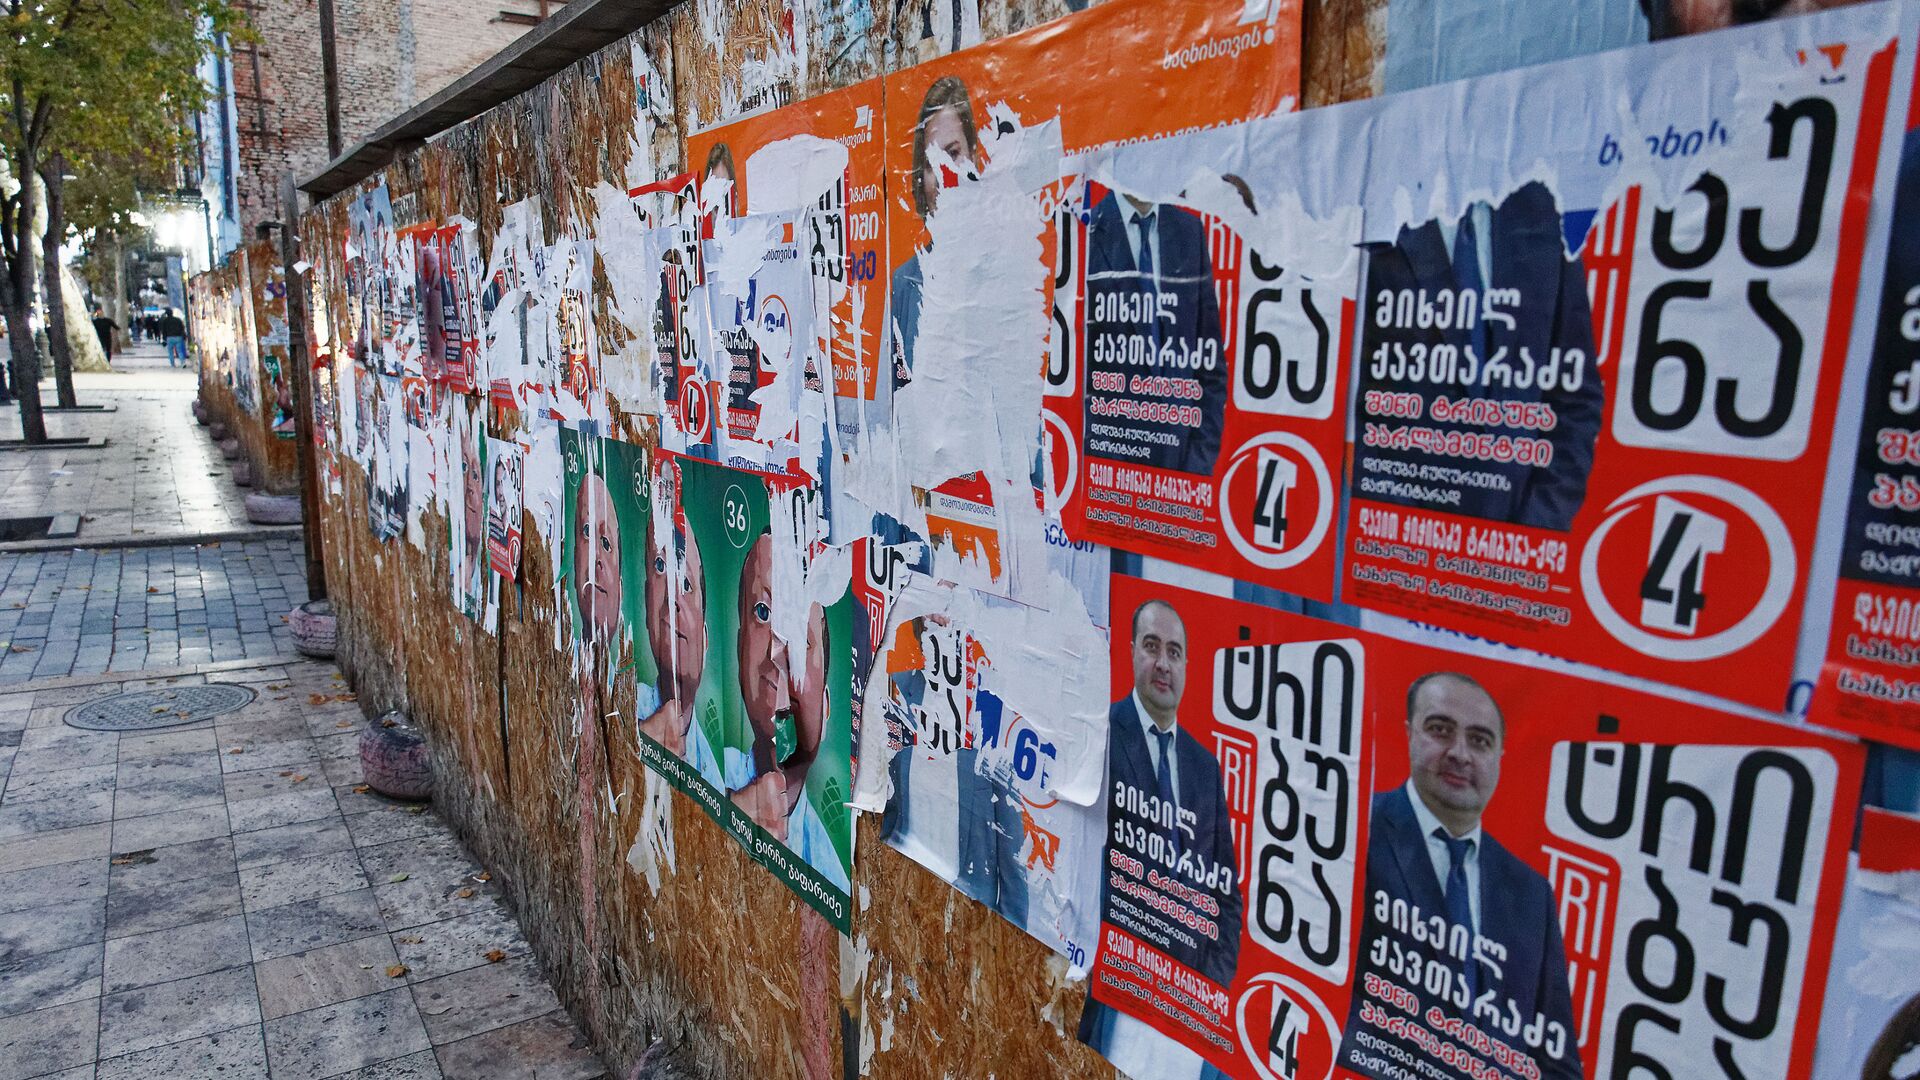 Оборванные плакаты - предвыборная реклама, расклеенная на заборах - Sputnik Грузия, 1920, 21.07.2021